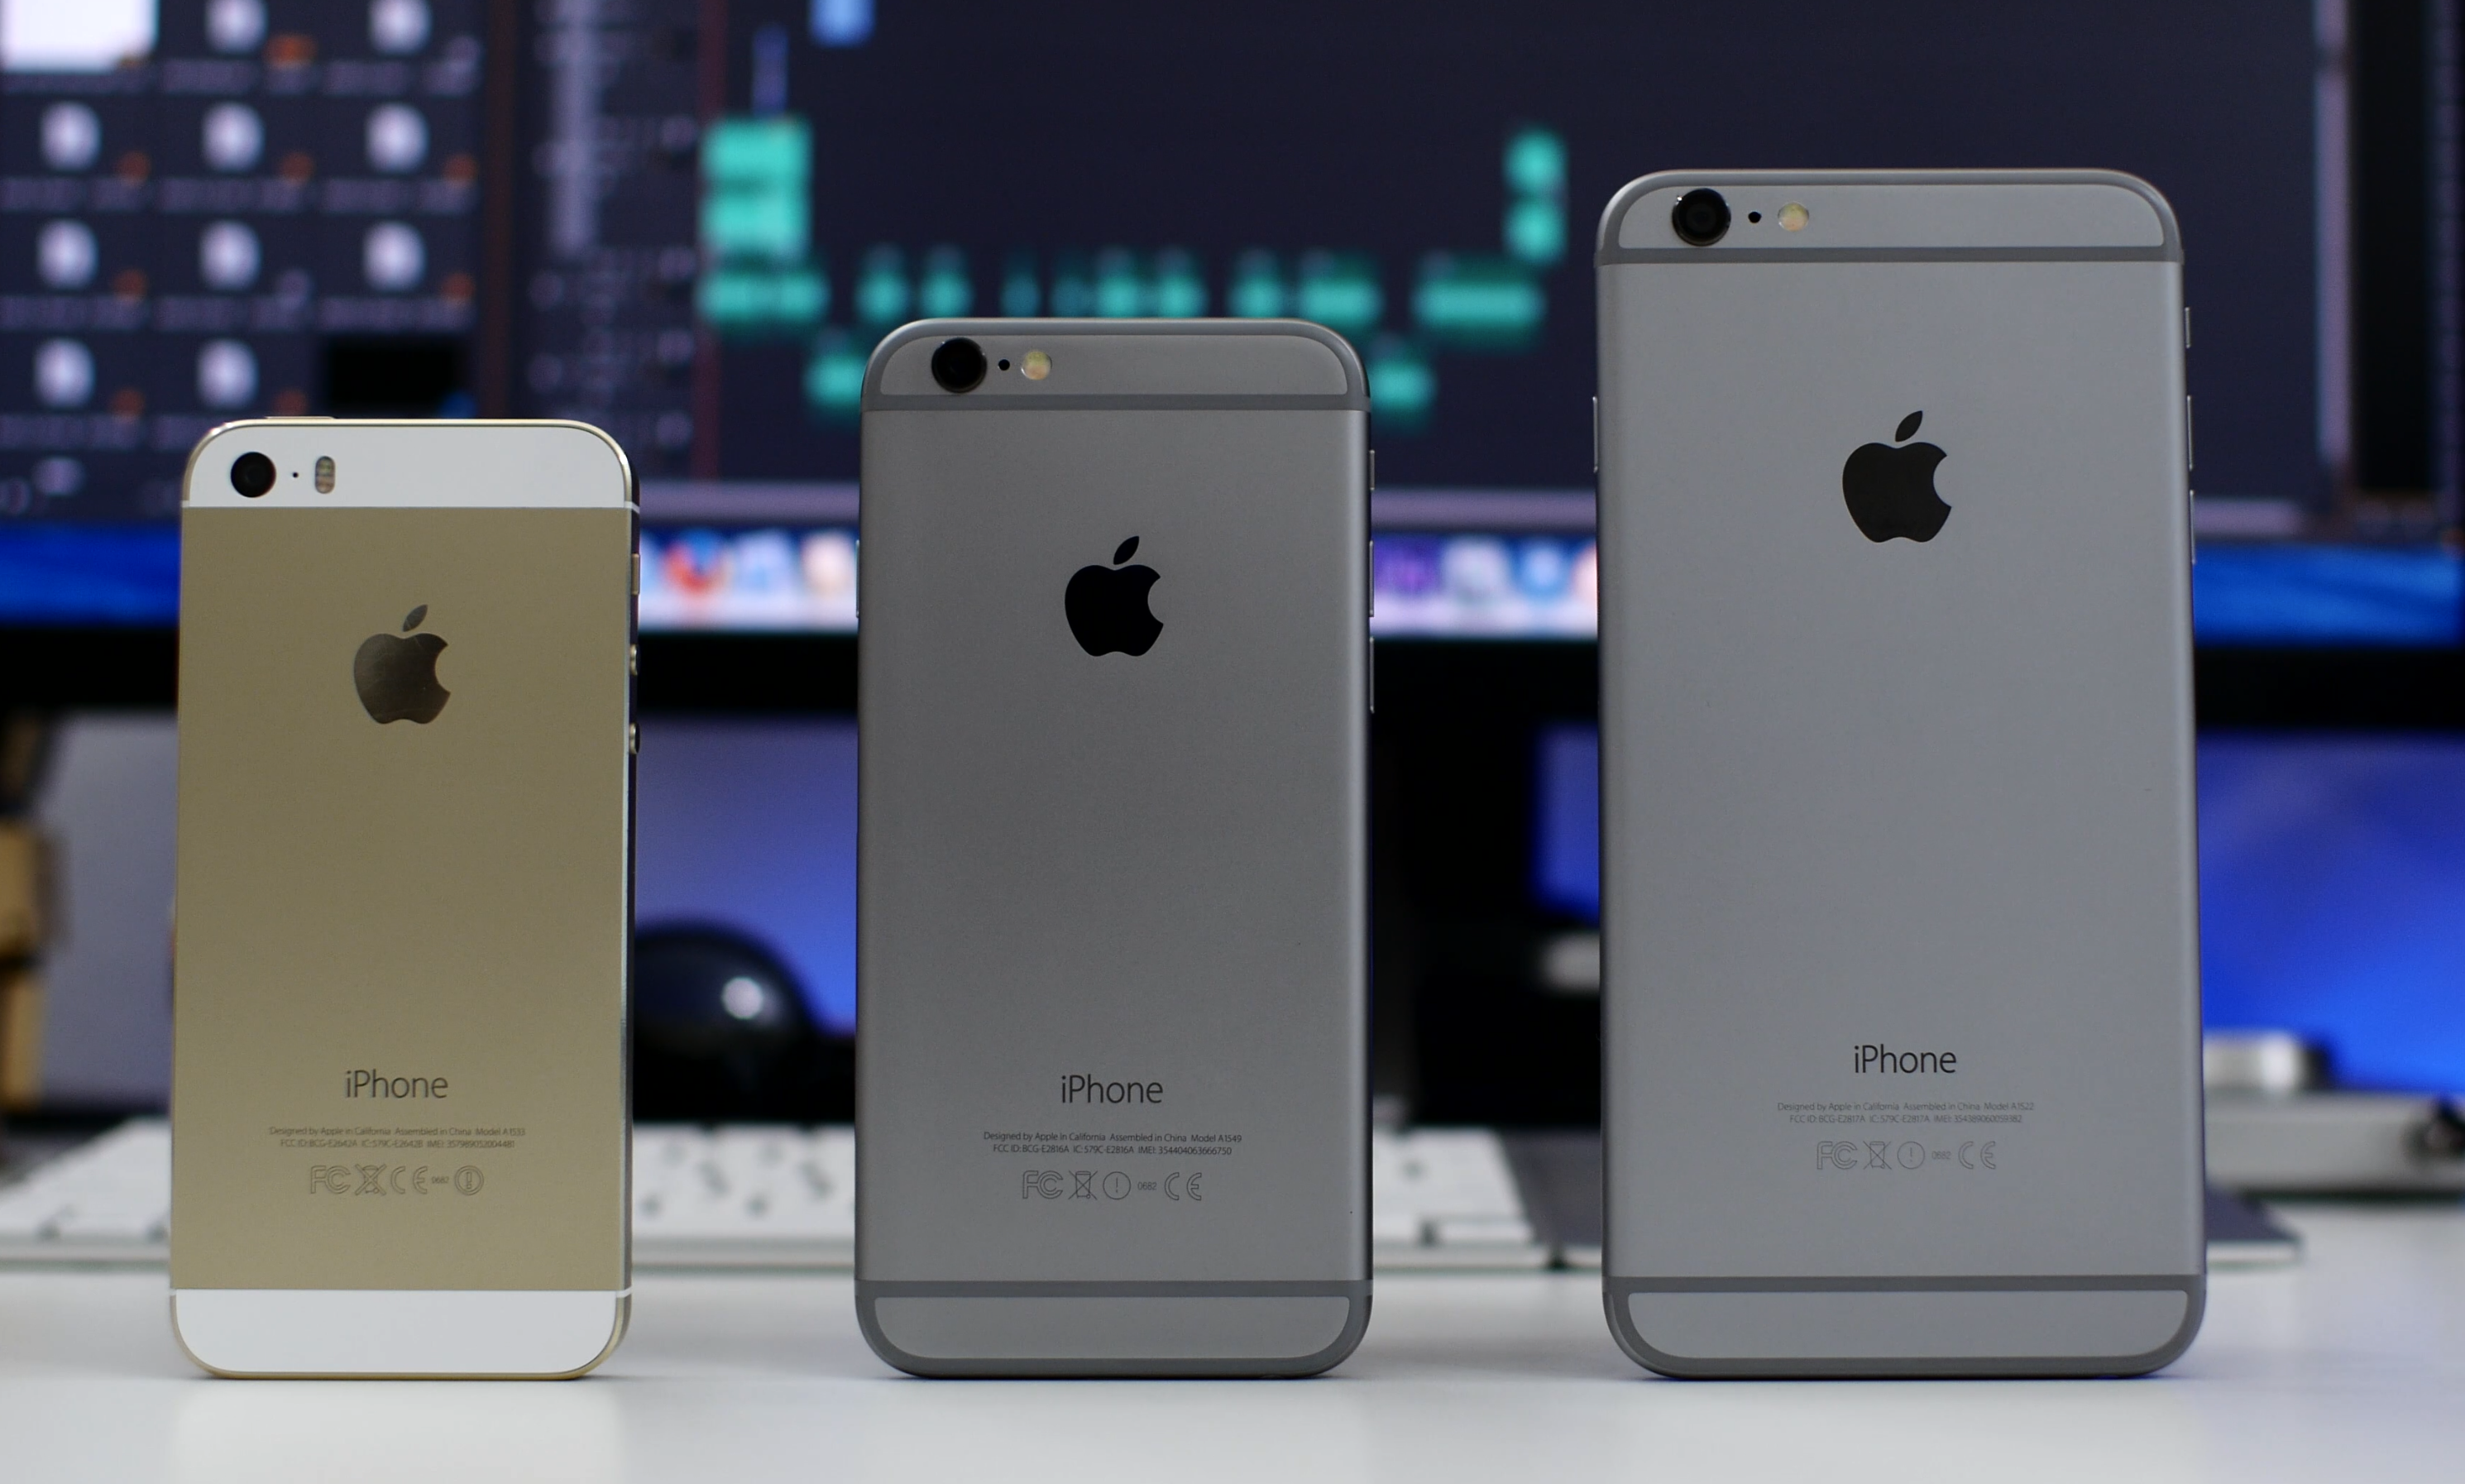 Apple hiện có các phiên bản iPhone kích thước 4 inch, 4,7 inch và 5,5 inch - Ảnh: AFP